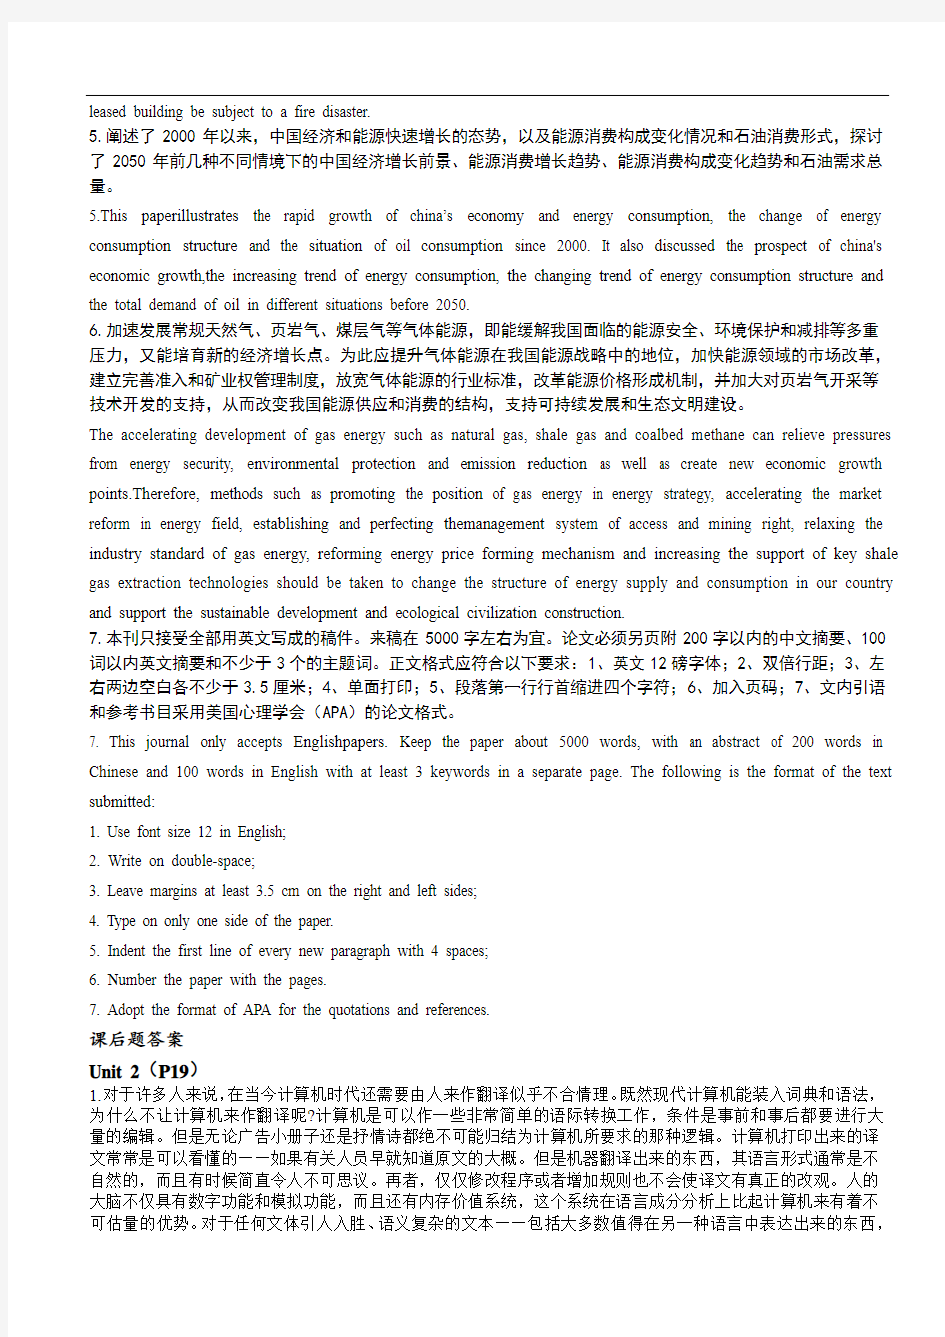 中国矿业大学(北京)2013-2014年博士基础英语考试资料合集